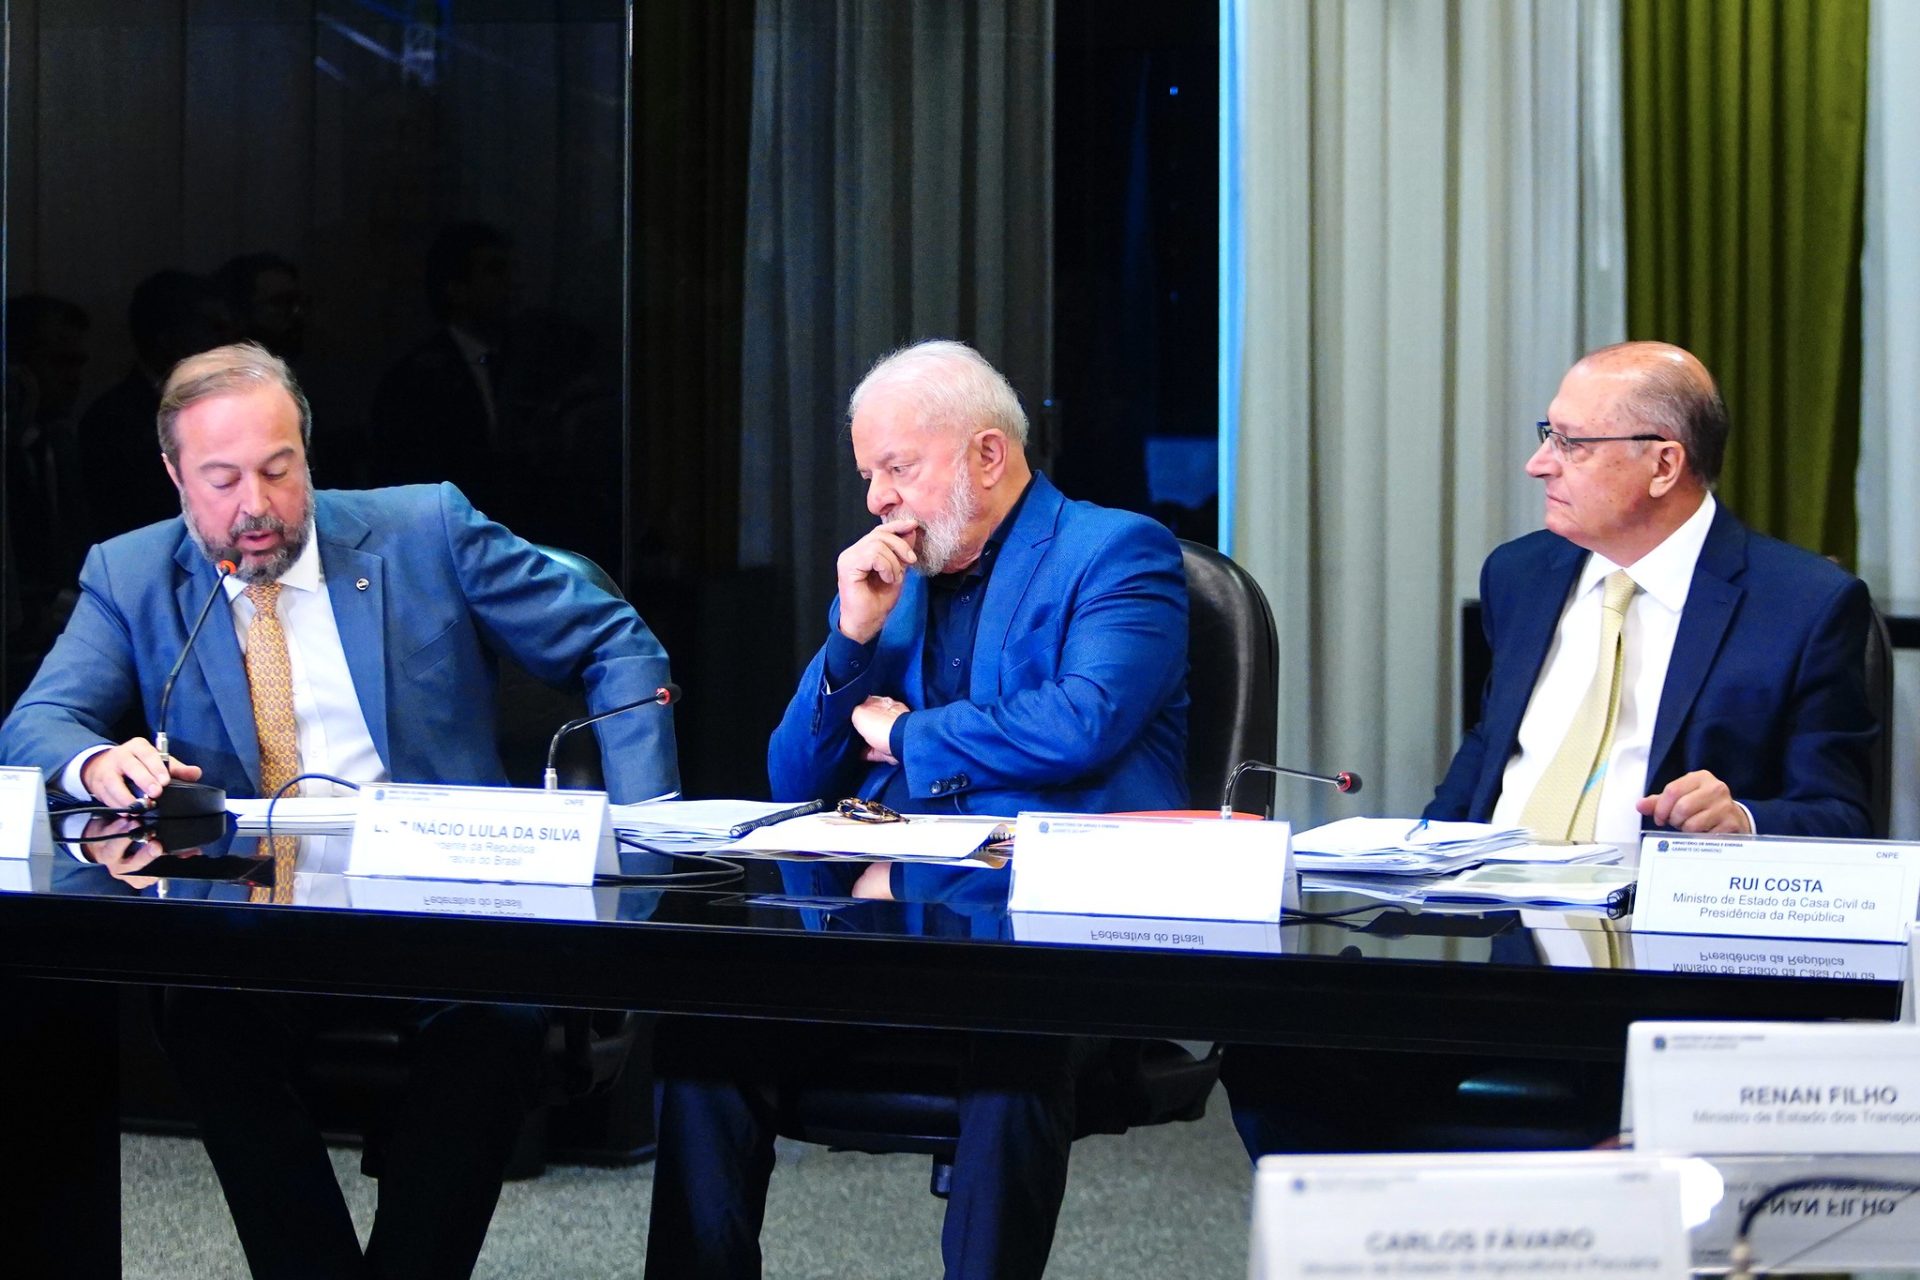 Governo quer nova análise da Petrobras sobre venda de ativos. Na imagem: O presidente Lula e o vice-presidente Geraldo Alckmin com o ministro de Minas e Energia, Alexandre Silveira, durante primeira reunião do CNPE do novo governo (Foto: Tauan Alencar/MME)